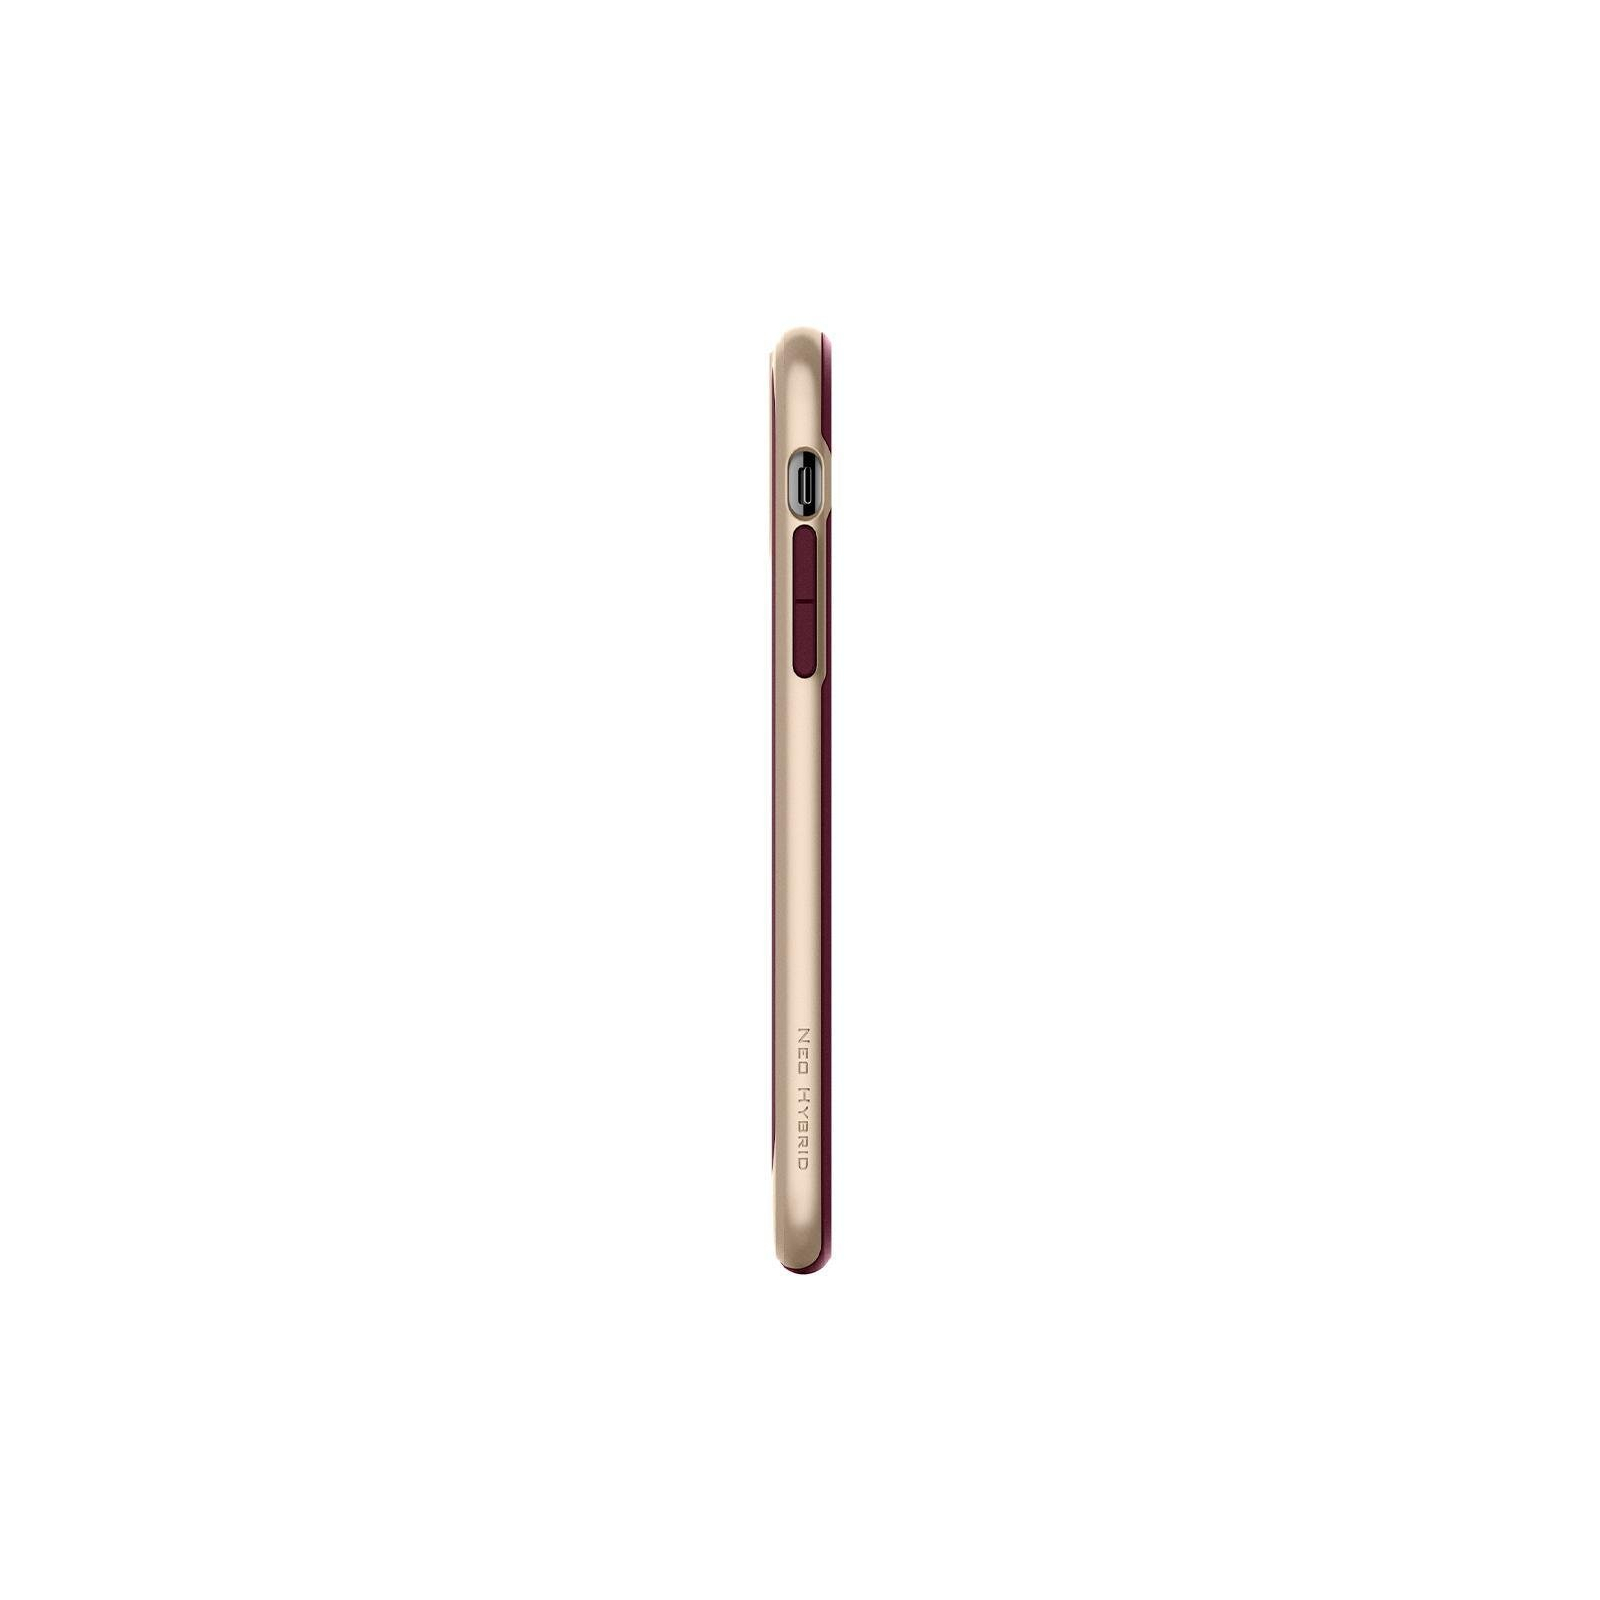 Чехол для мобильного телефона Spigen iPhone 11 Pro Max Neo Hybrid, Burgundy (075CS27148) изображение 5